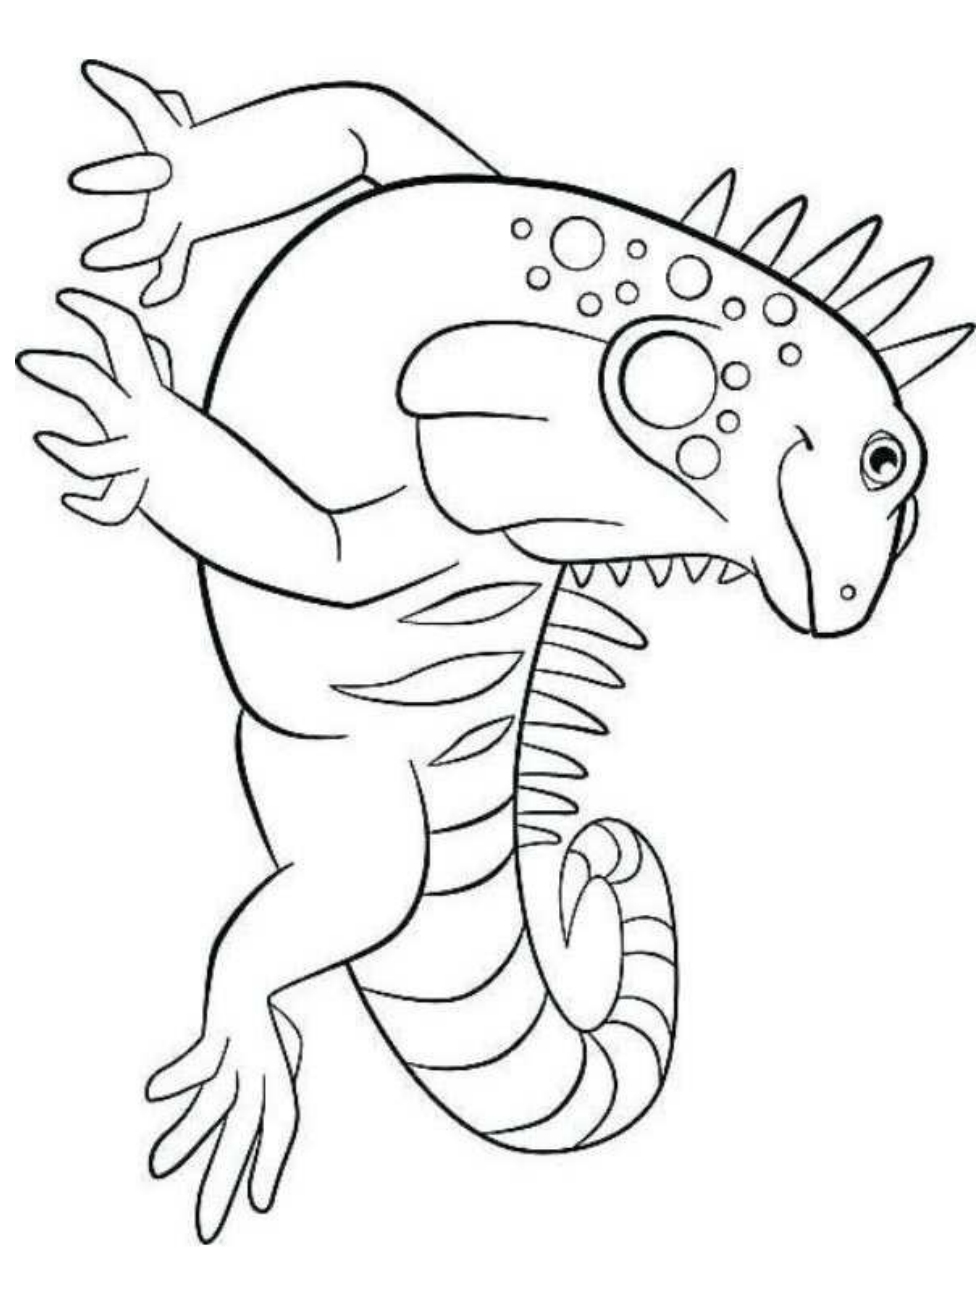 Desenho 5 de iguanas para imprimir e colorir